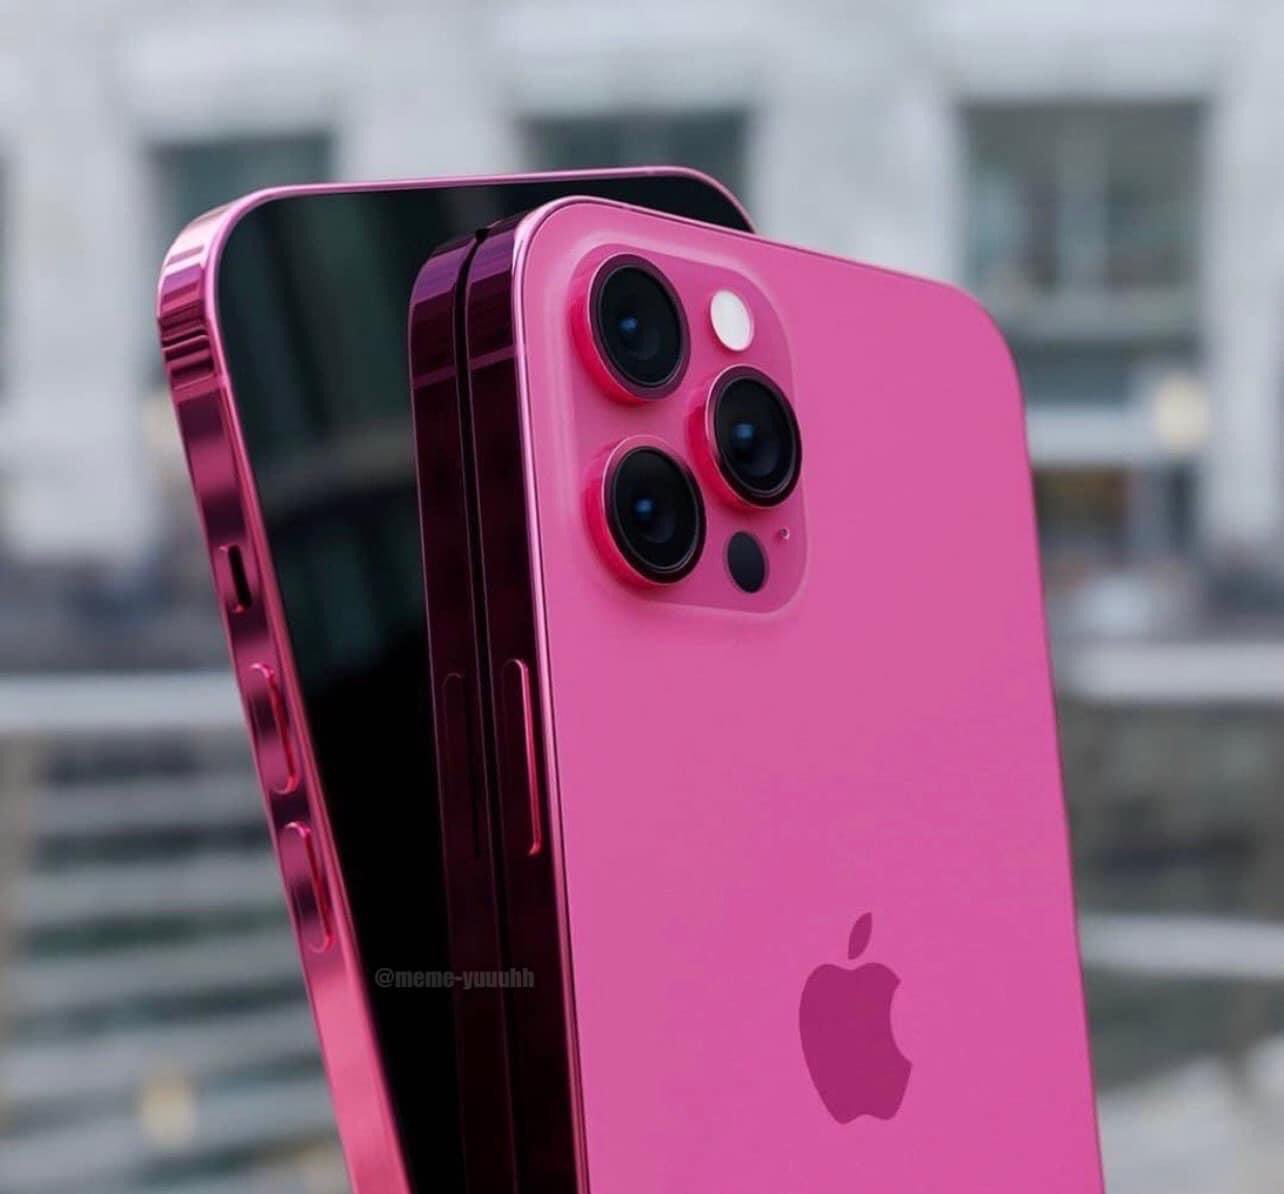 Nghi vấn về iPhone 13 màu hồng đã kéo dài trong thời gian qua, nhưng tin vui đã đến khi Apple đã chính thức phát hành phiên bản sản phẩm này. Nếu bạn là fan của màu hồng, hãy cùng chúng tôi khám phá chiếc điện thoại hoàn hảo này!